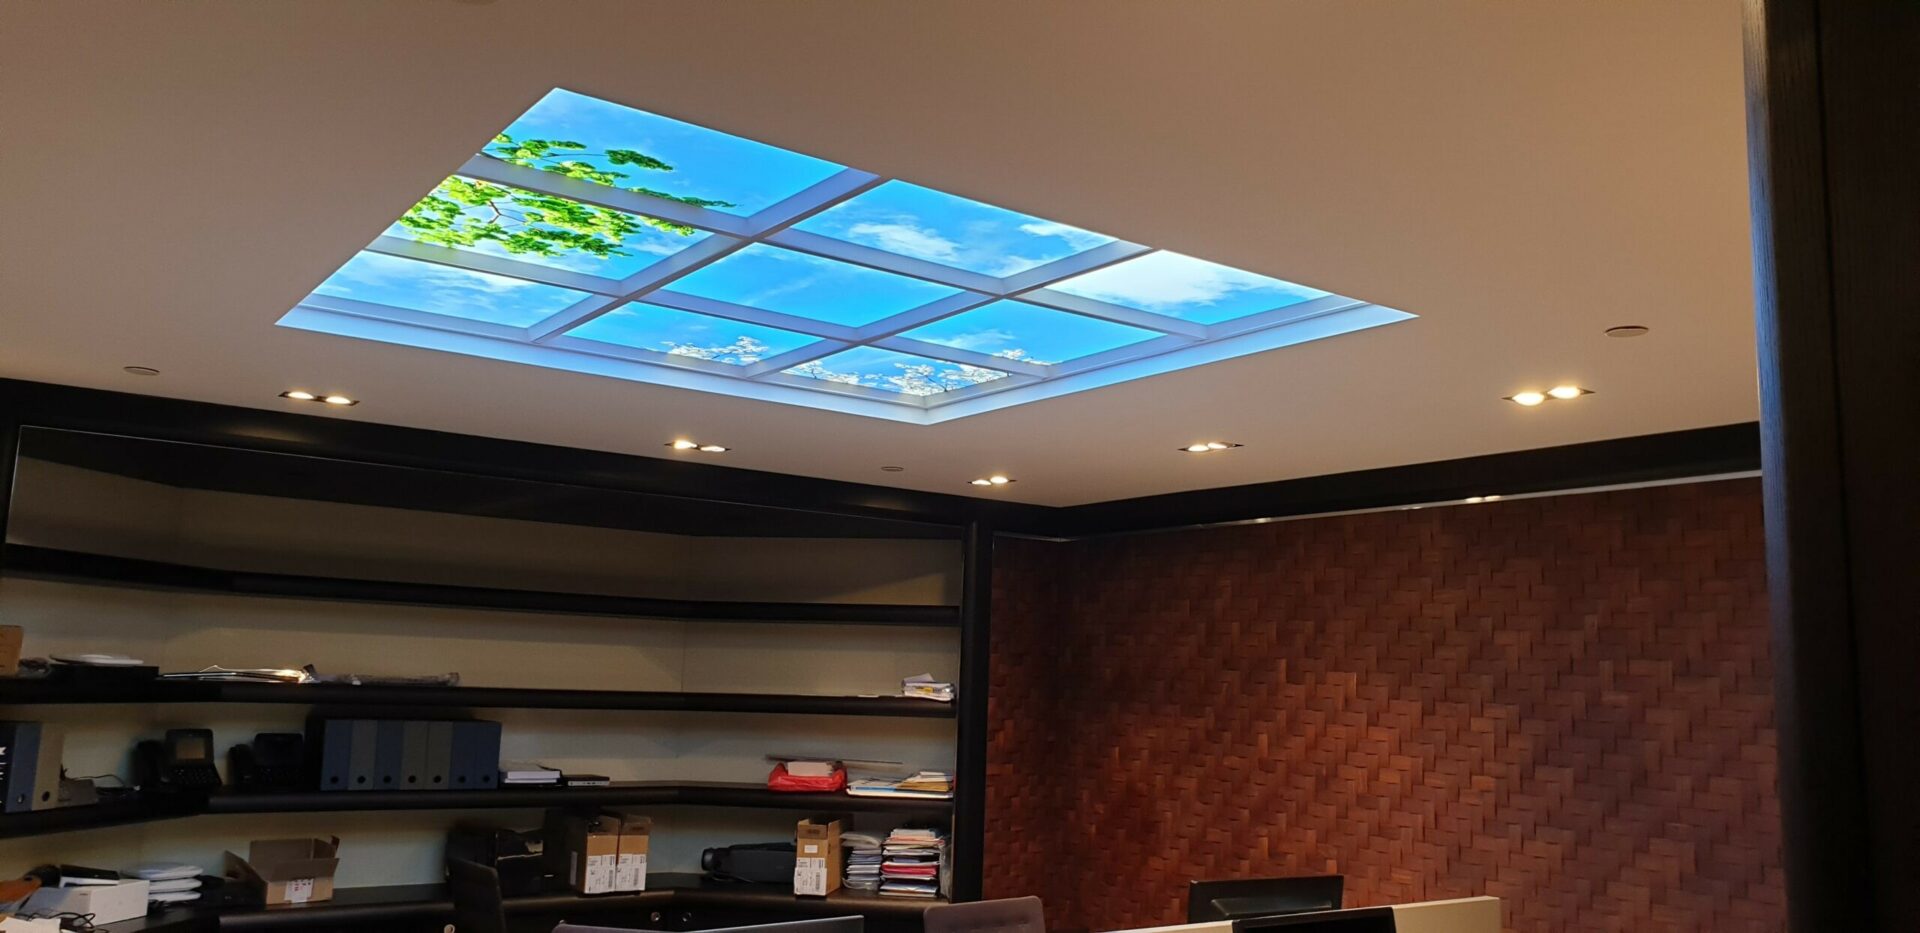 Plafonds lumineux Cumulux encastré dans le faux plafond en placo pour valoriser un espace de travail sans fenêtre